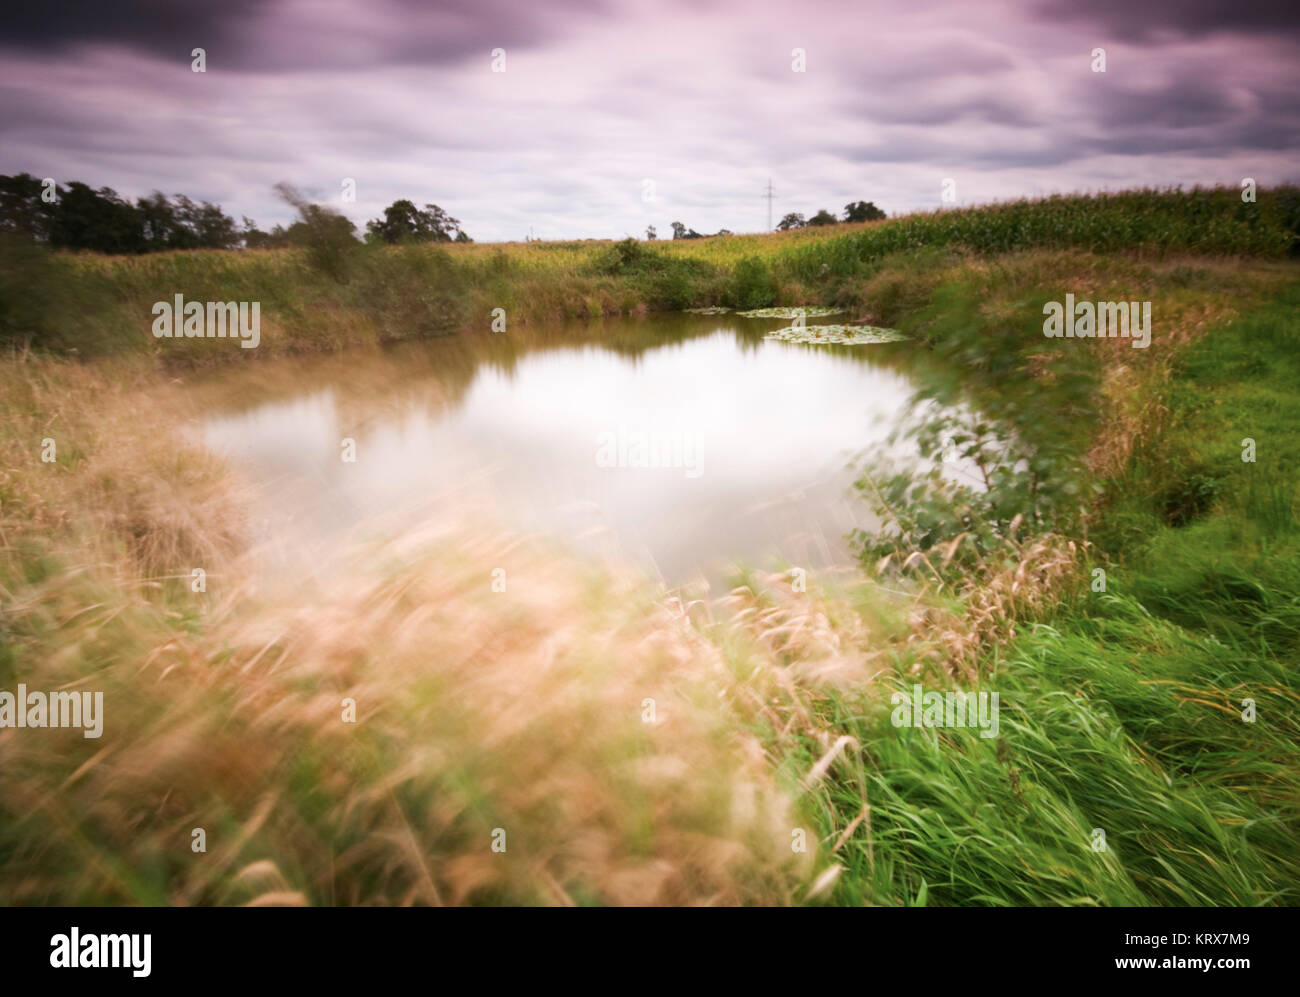 Weitwinklige Langzeitbelichtung eines kleinen Teiches auf einer Wiesenlandschaft. Stock Photo